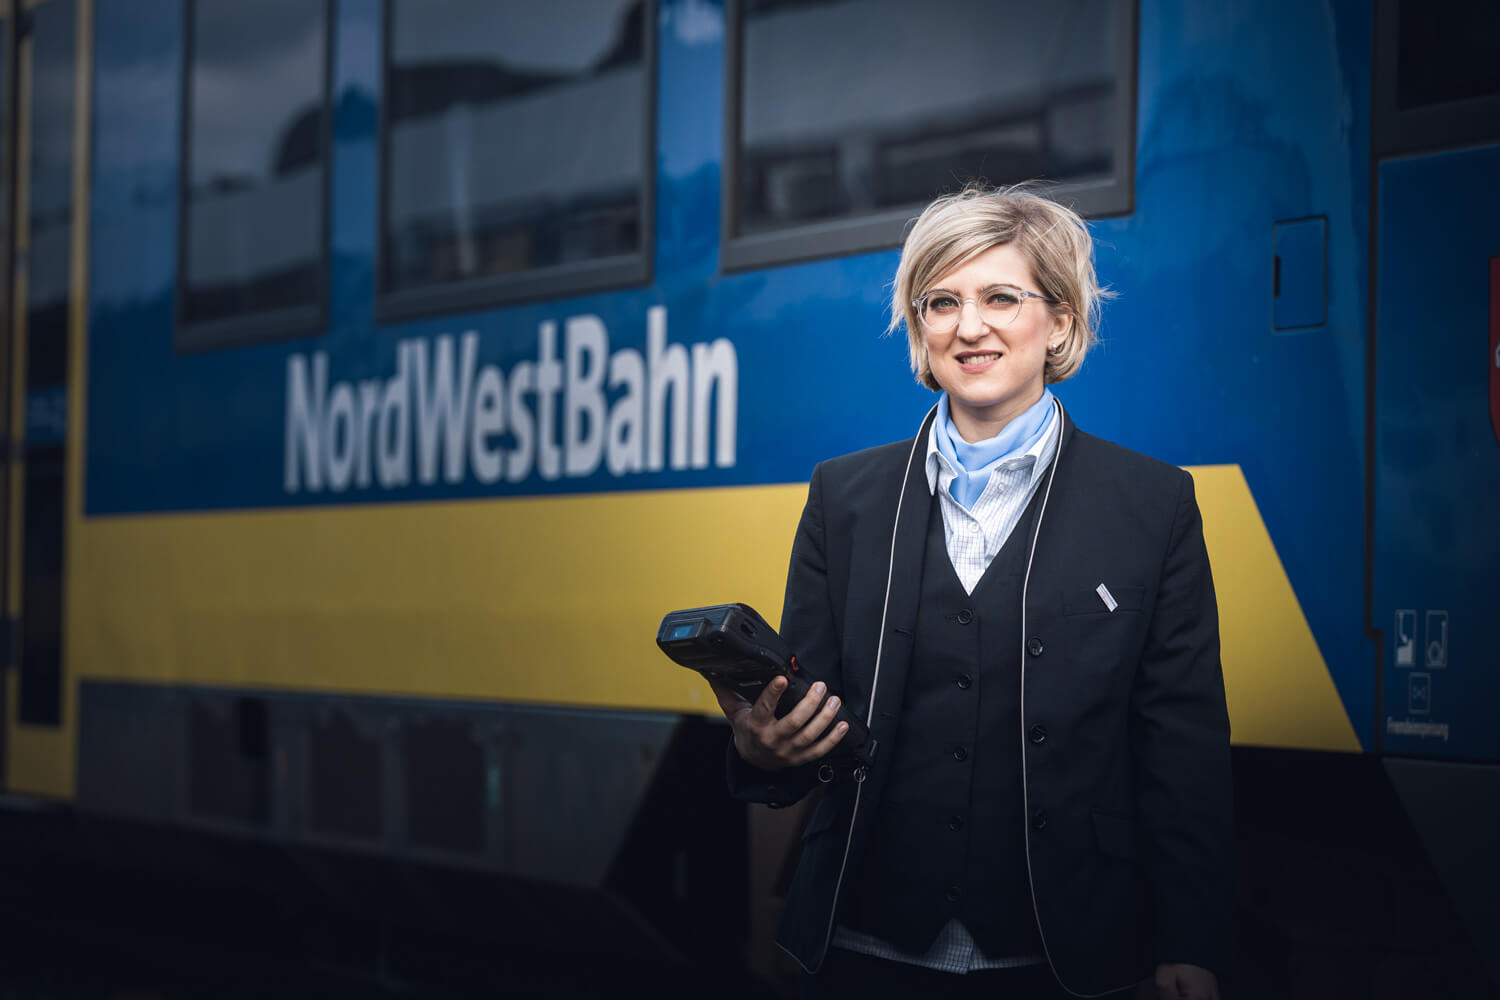 Frau in Uniform, Halstuch und einem Ticketgerät in der Hand steht vor einer blauen Regionalbahn, auf der NordWestBahn zu lesen ist.